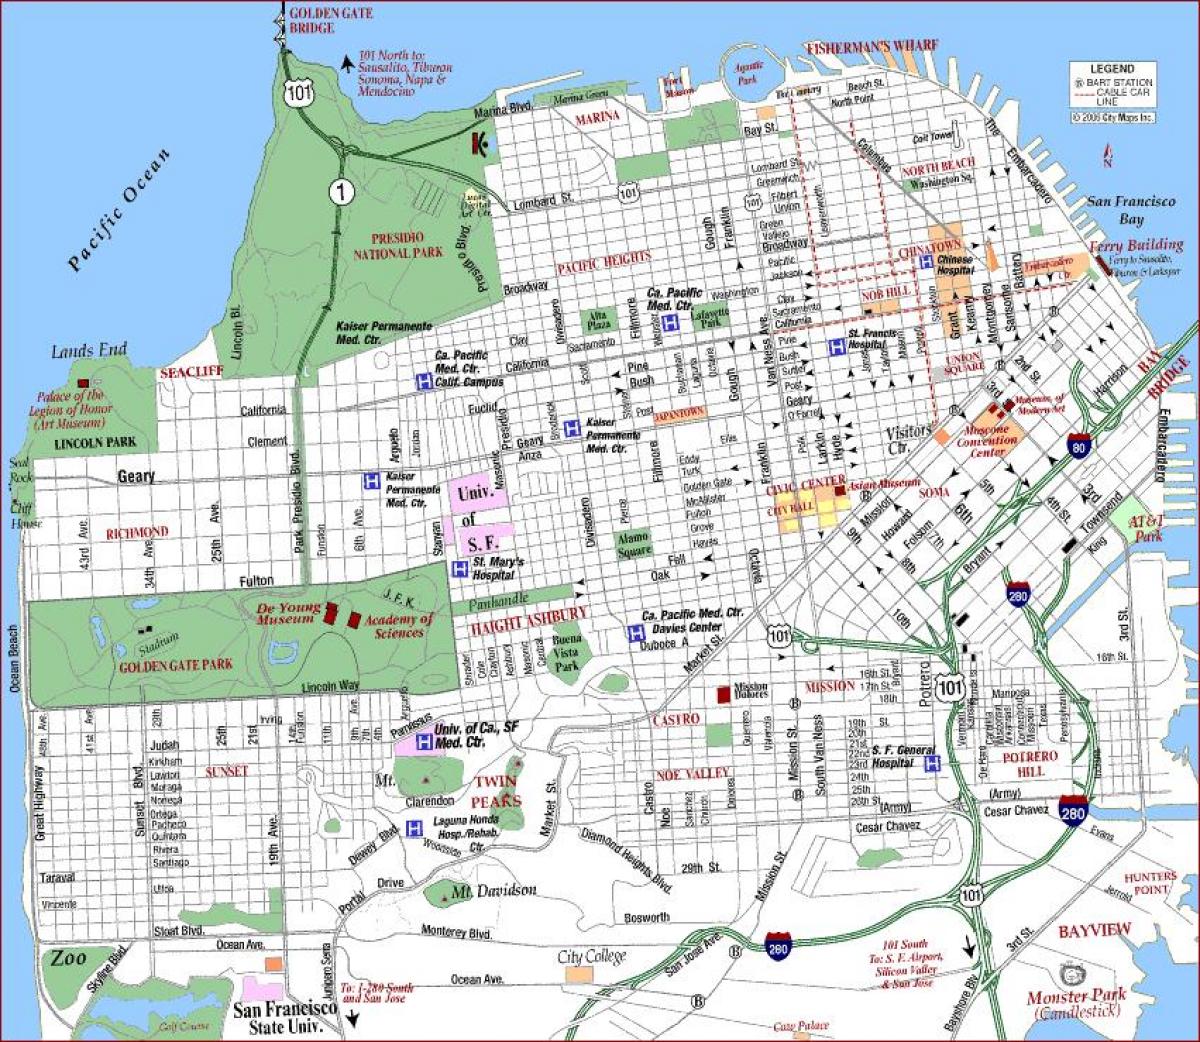 سان فرانسیسکو va medical center در نقشه